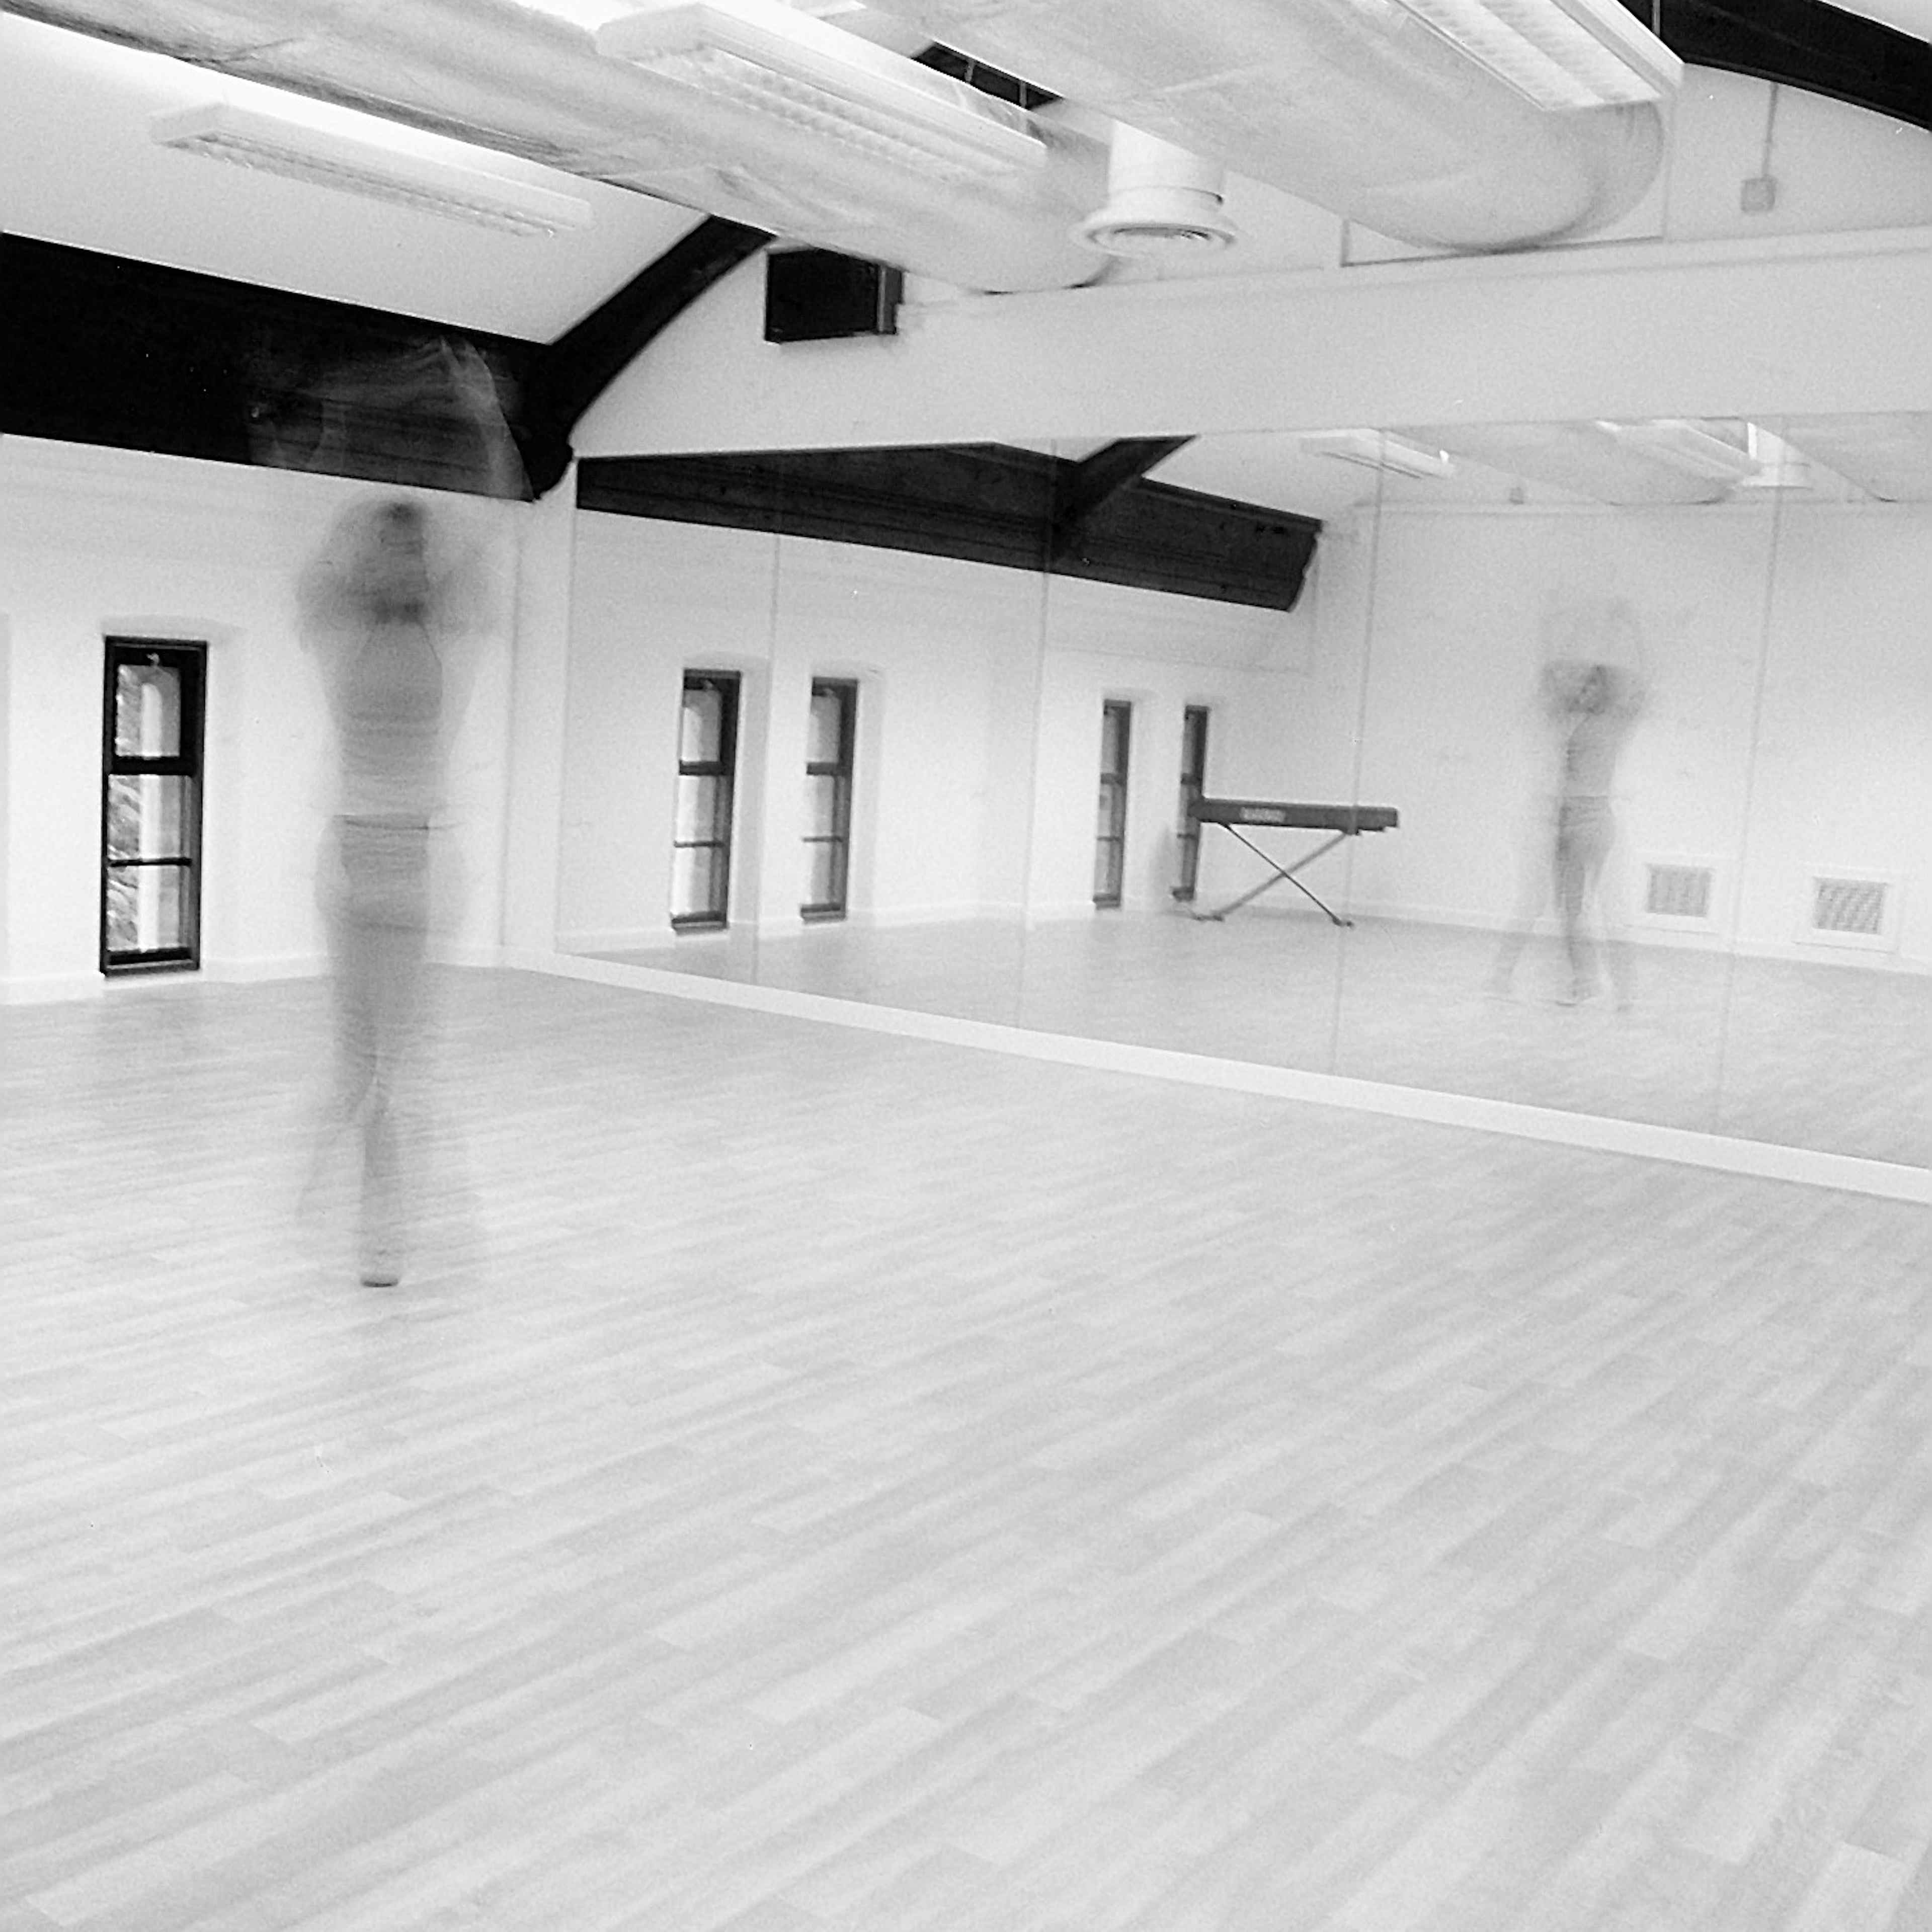 Trestle Theatre Company - Dance Studio image 3